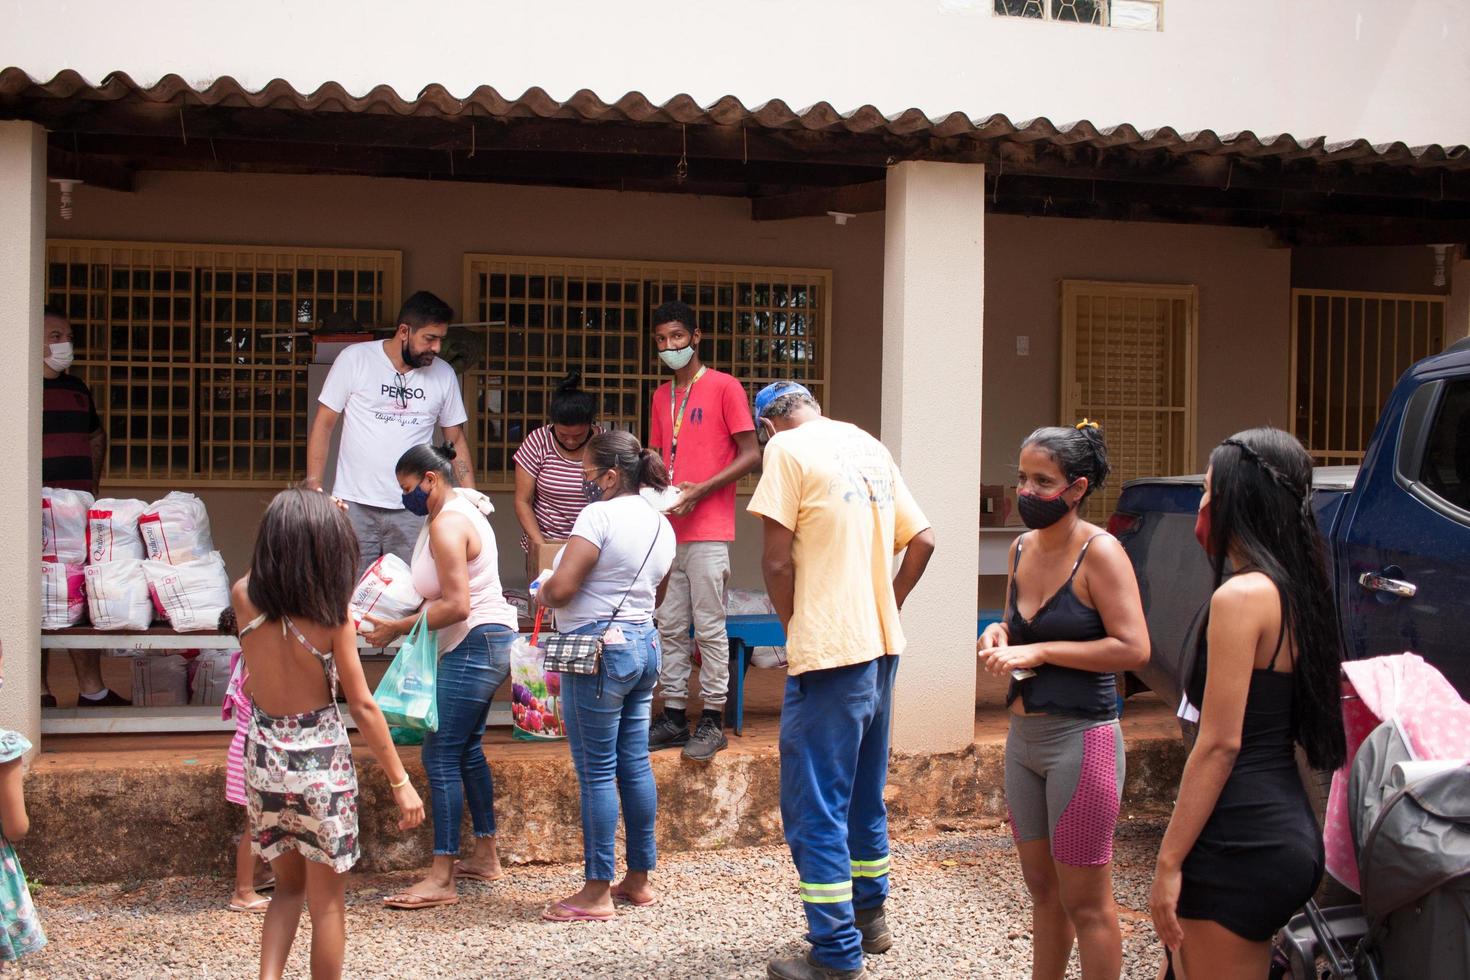 planaltina, brasilien, 2-26-22-lokales fütterungszentrum, das nahrung austeilt foto